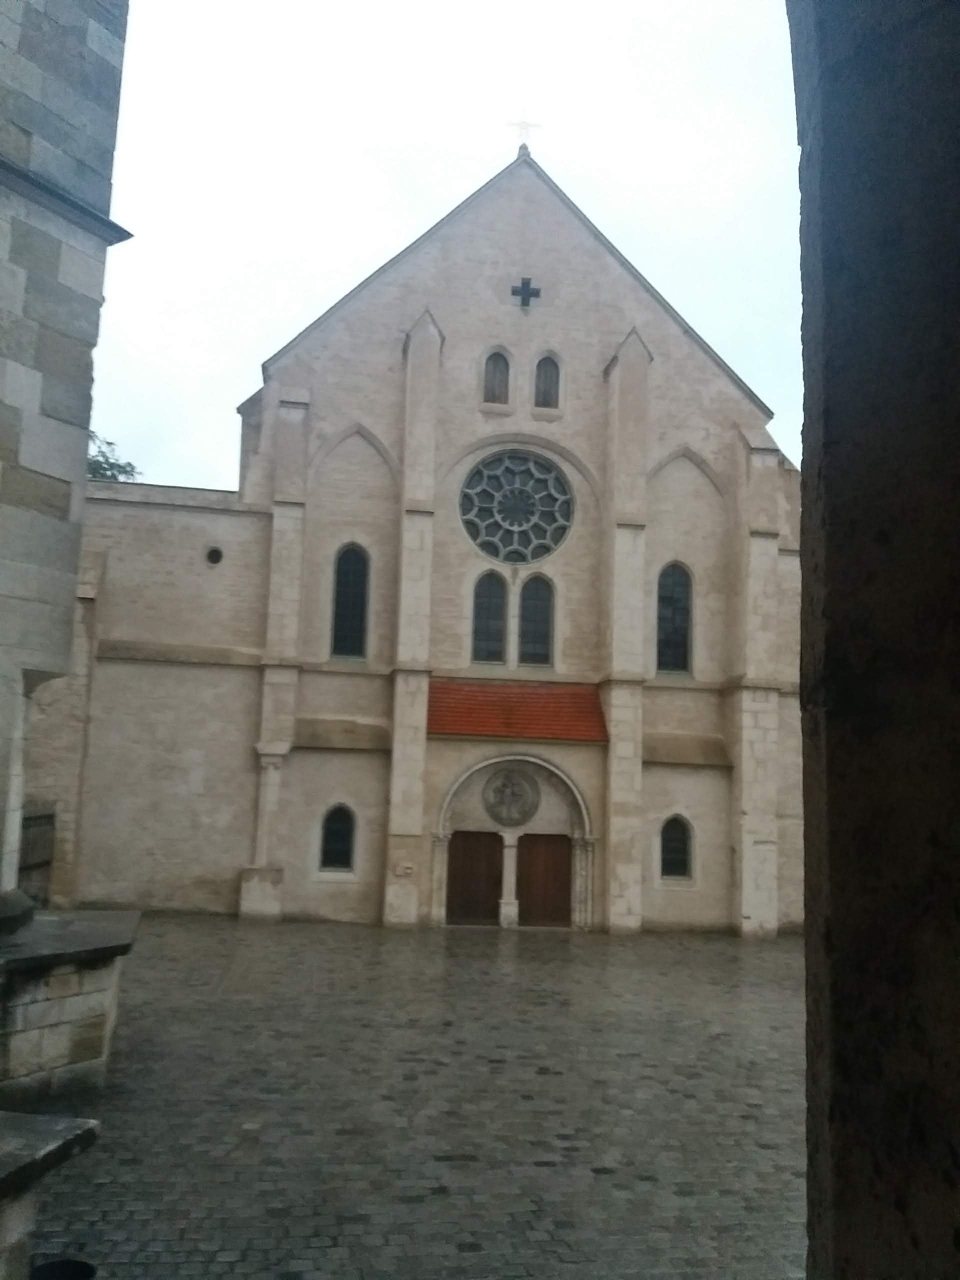 Ulrichskirche am Regensburger Dom